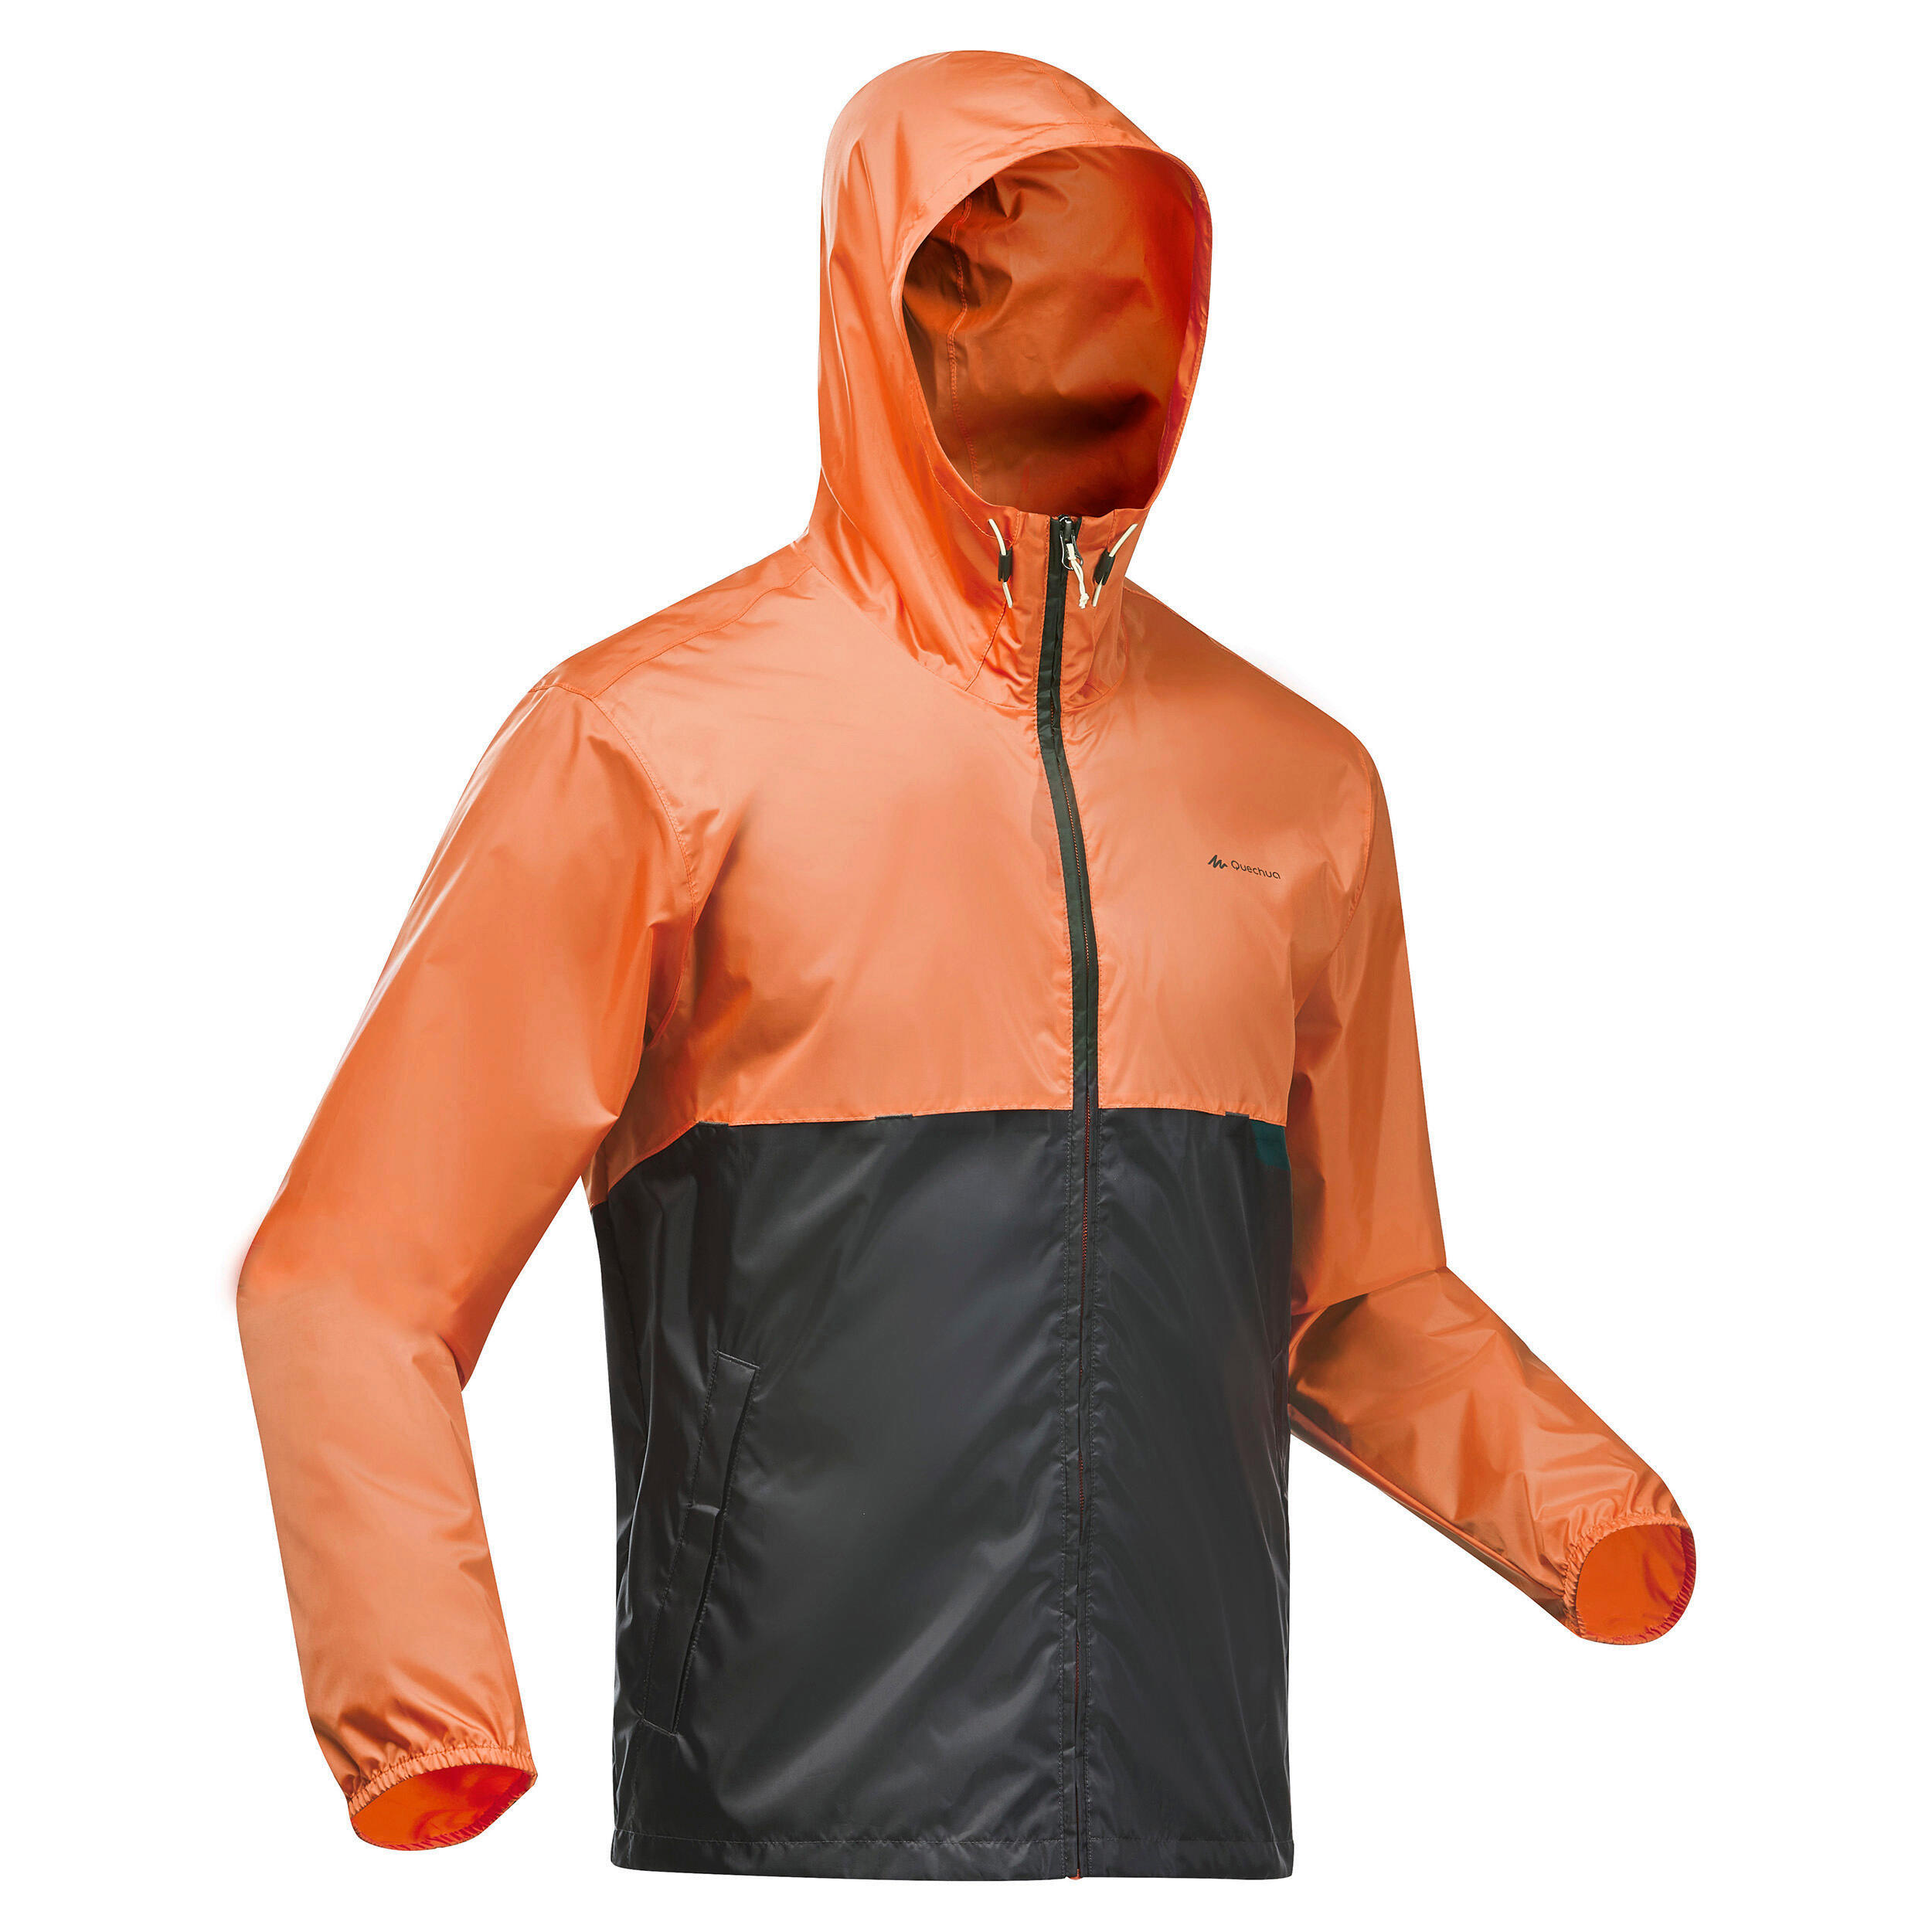 Jachetă Impermeabilă cu fermoar Drumeție Raincut Portocaliu-Gri Bărbați decathlon.ro